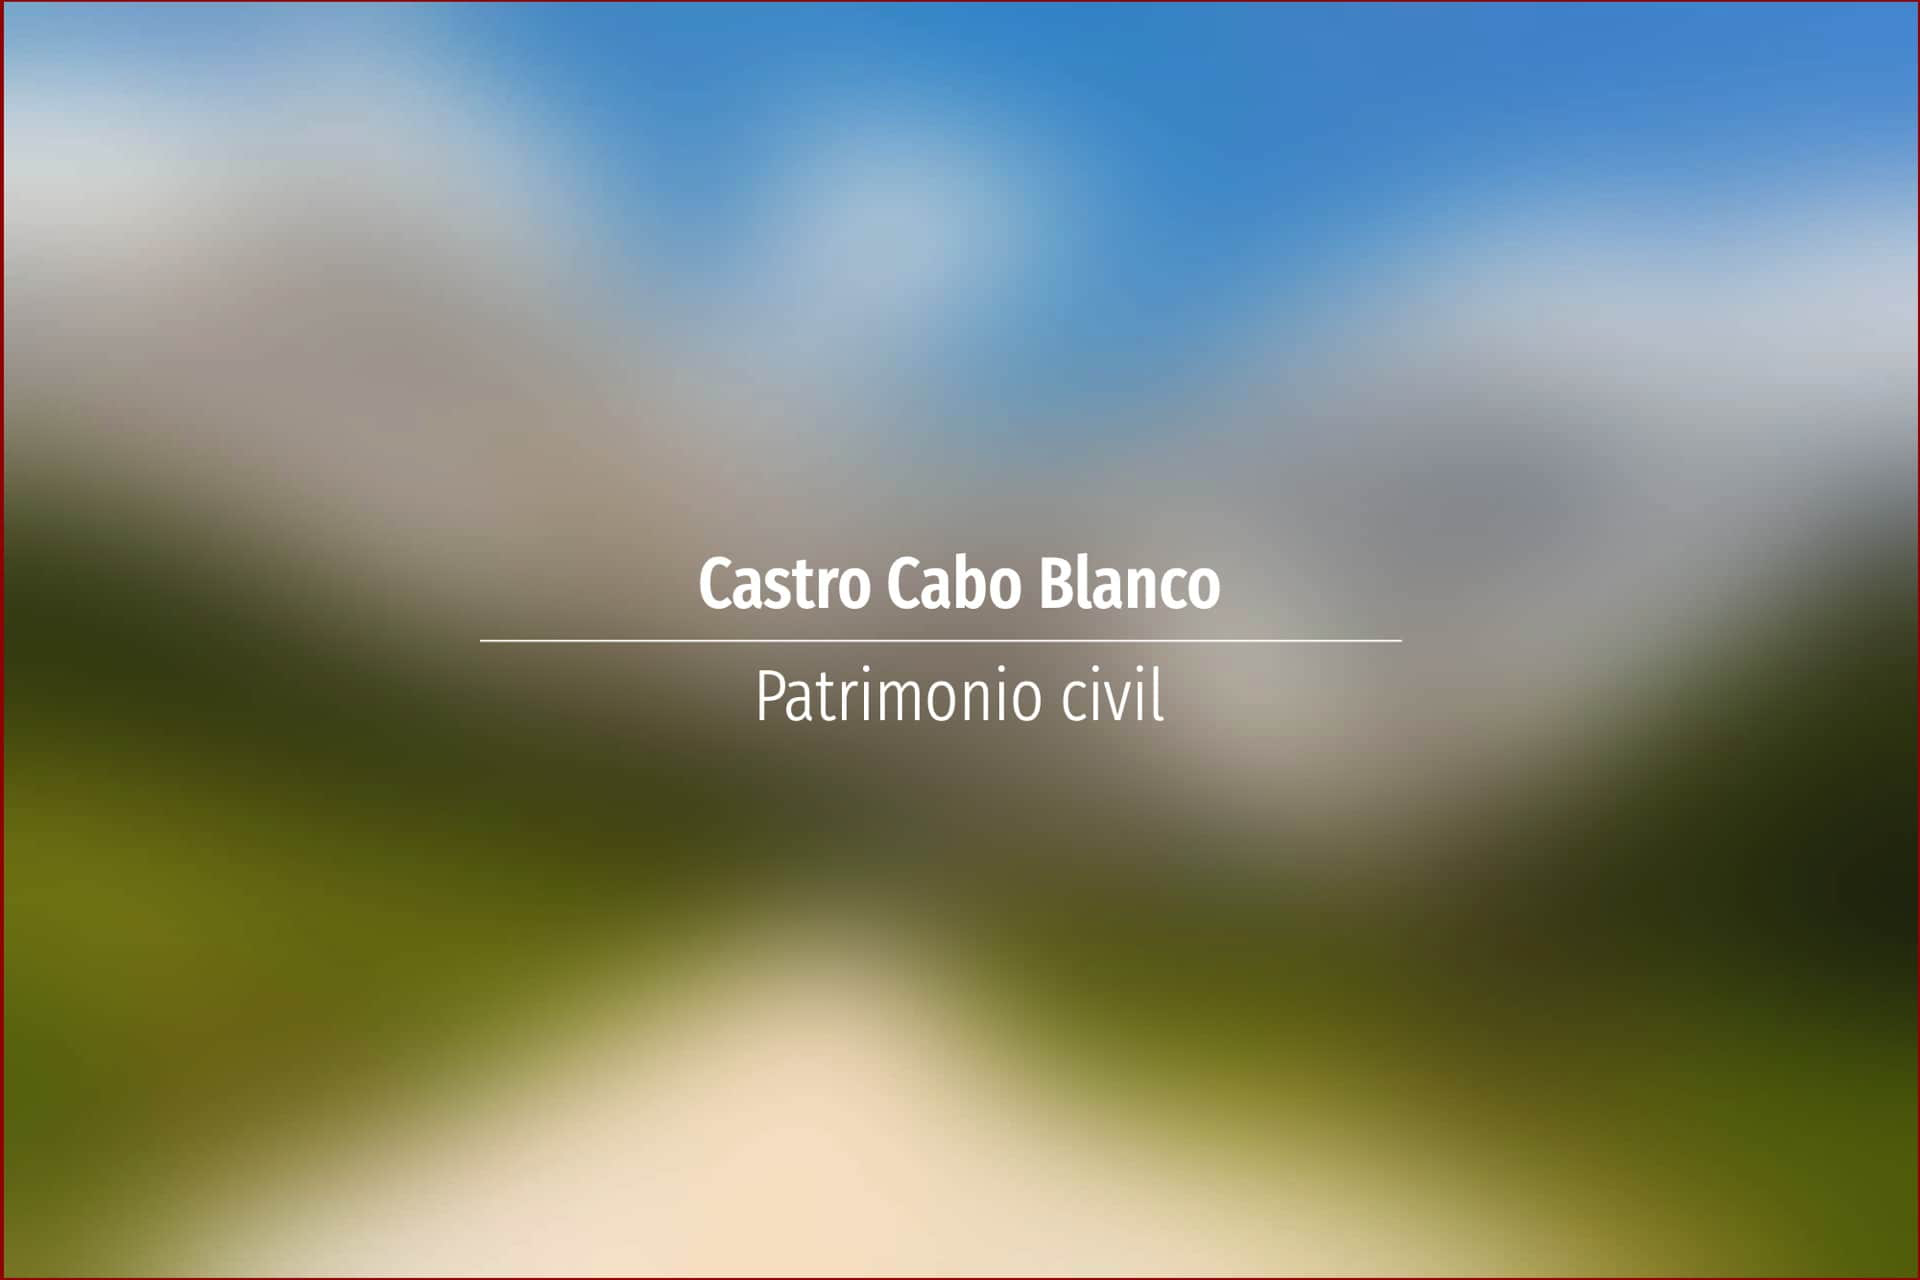 Castro Cabo Blanco